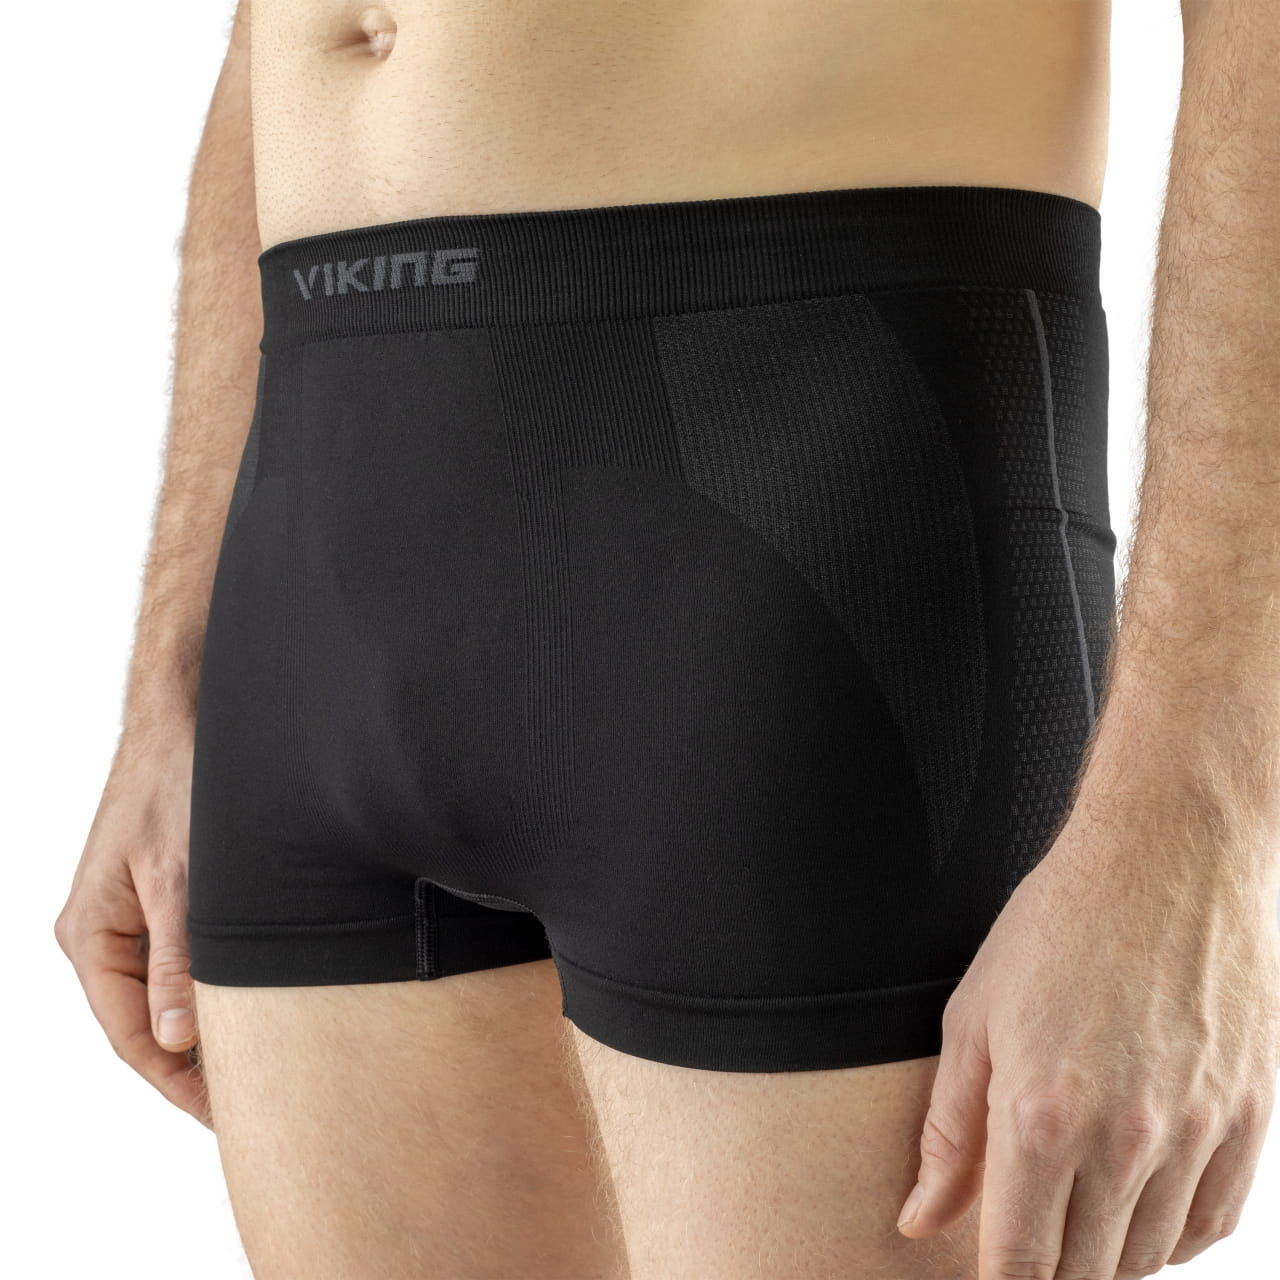 Męska bielizna funkcyjna Viking Underwear  Eiger